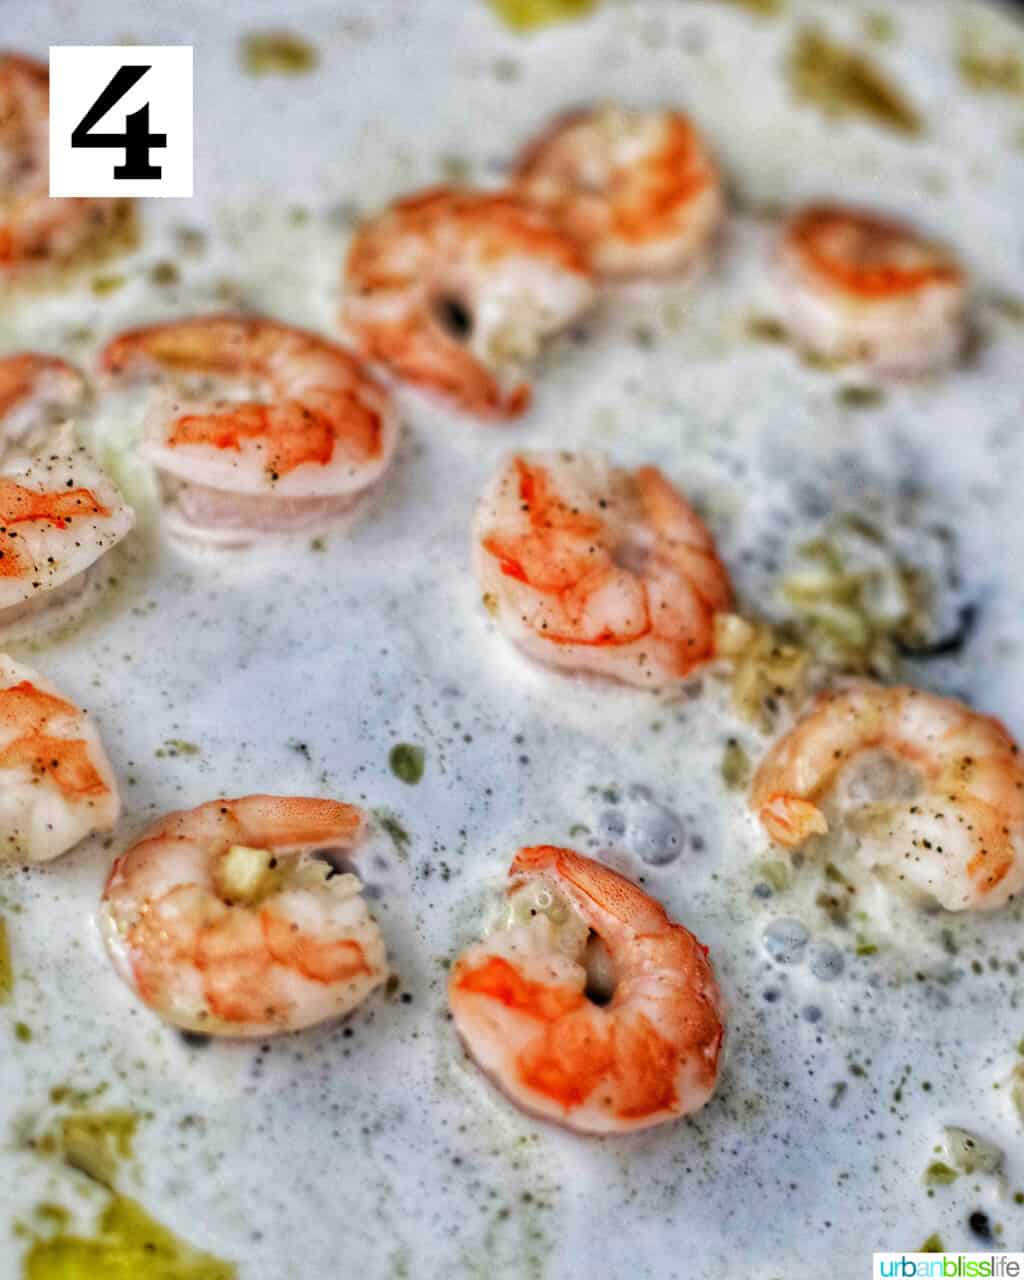 shrimp in a pan